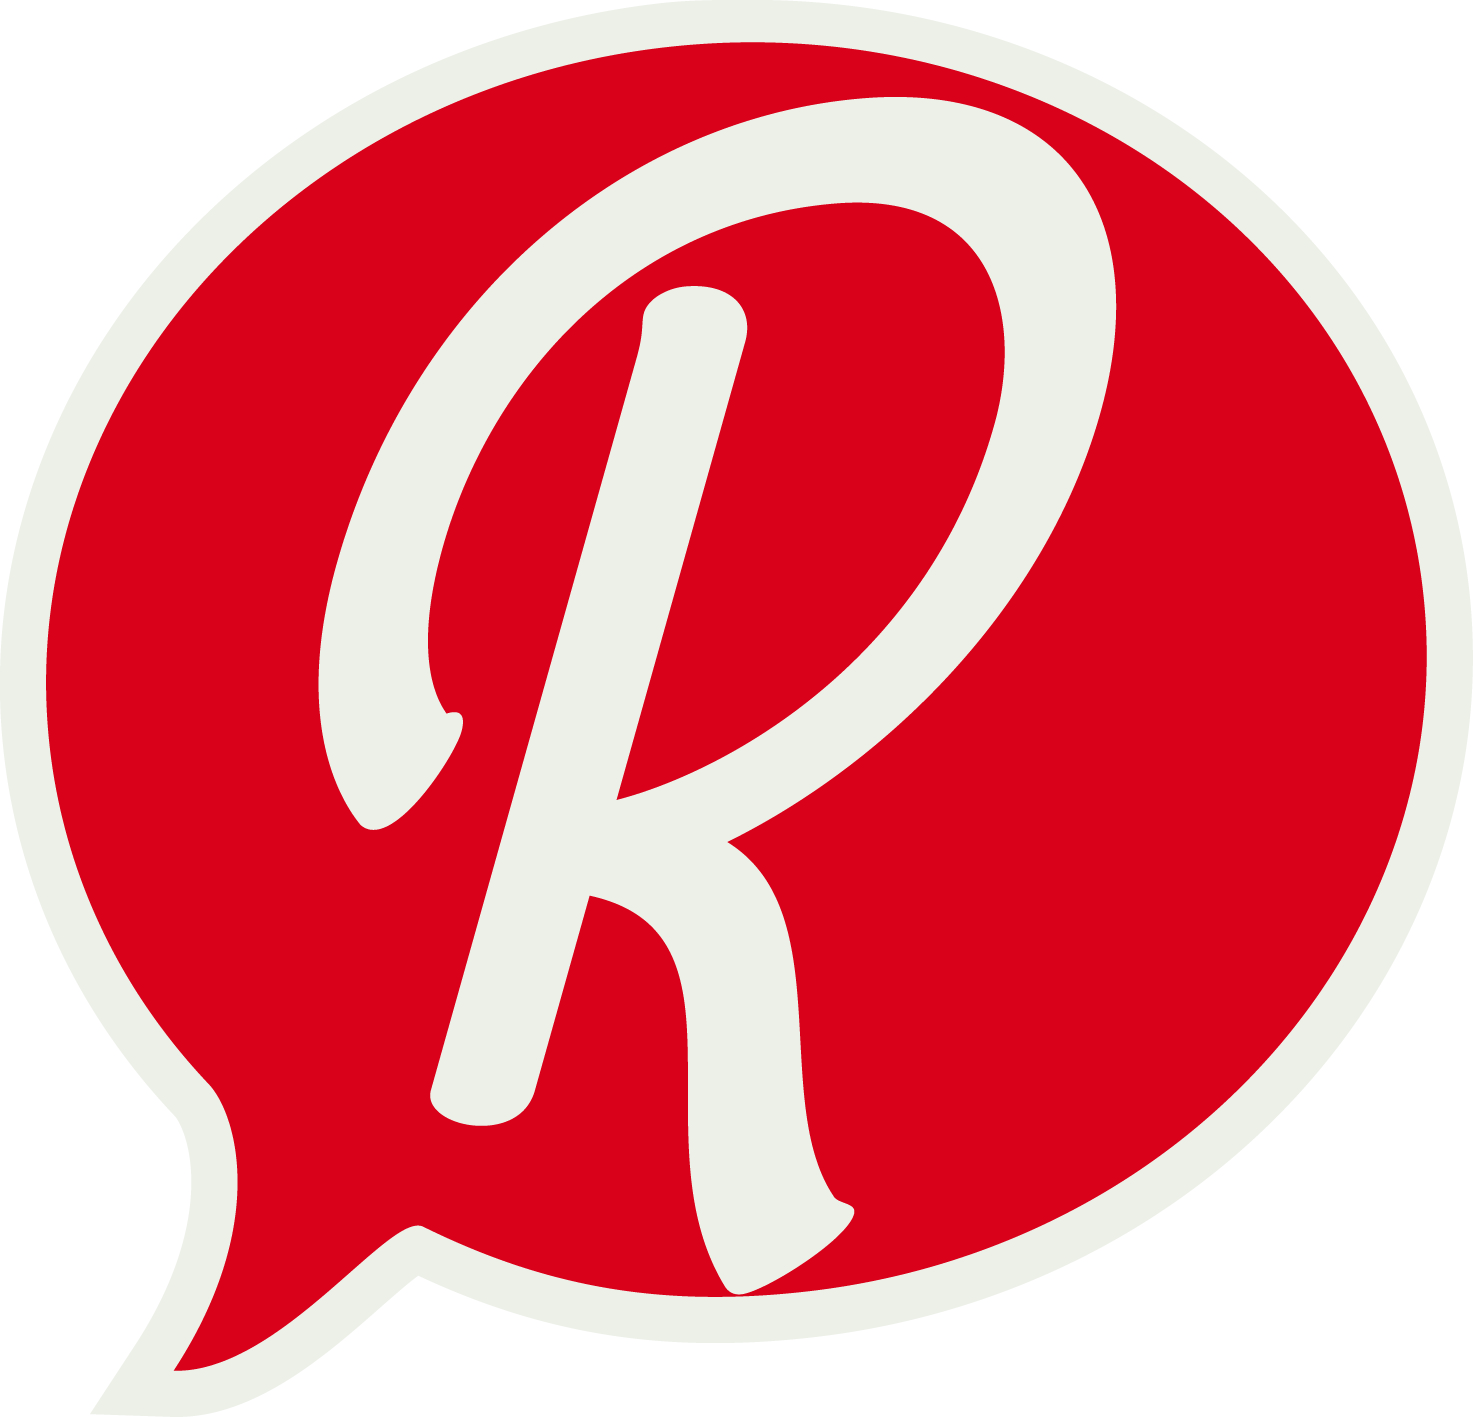 R-logo_Rlebnisreich.jpg - 1021.62 kb